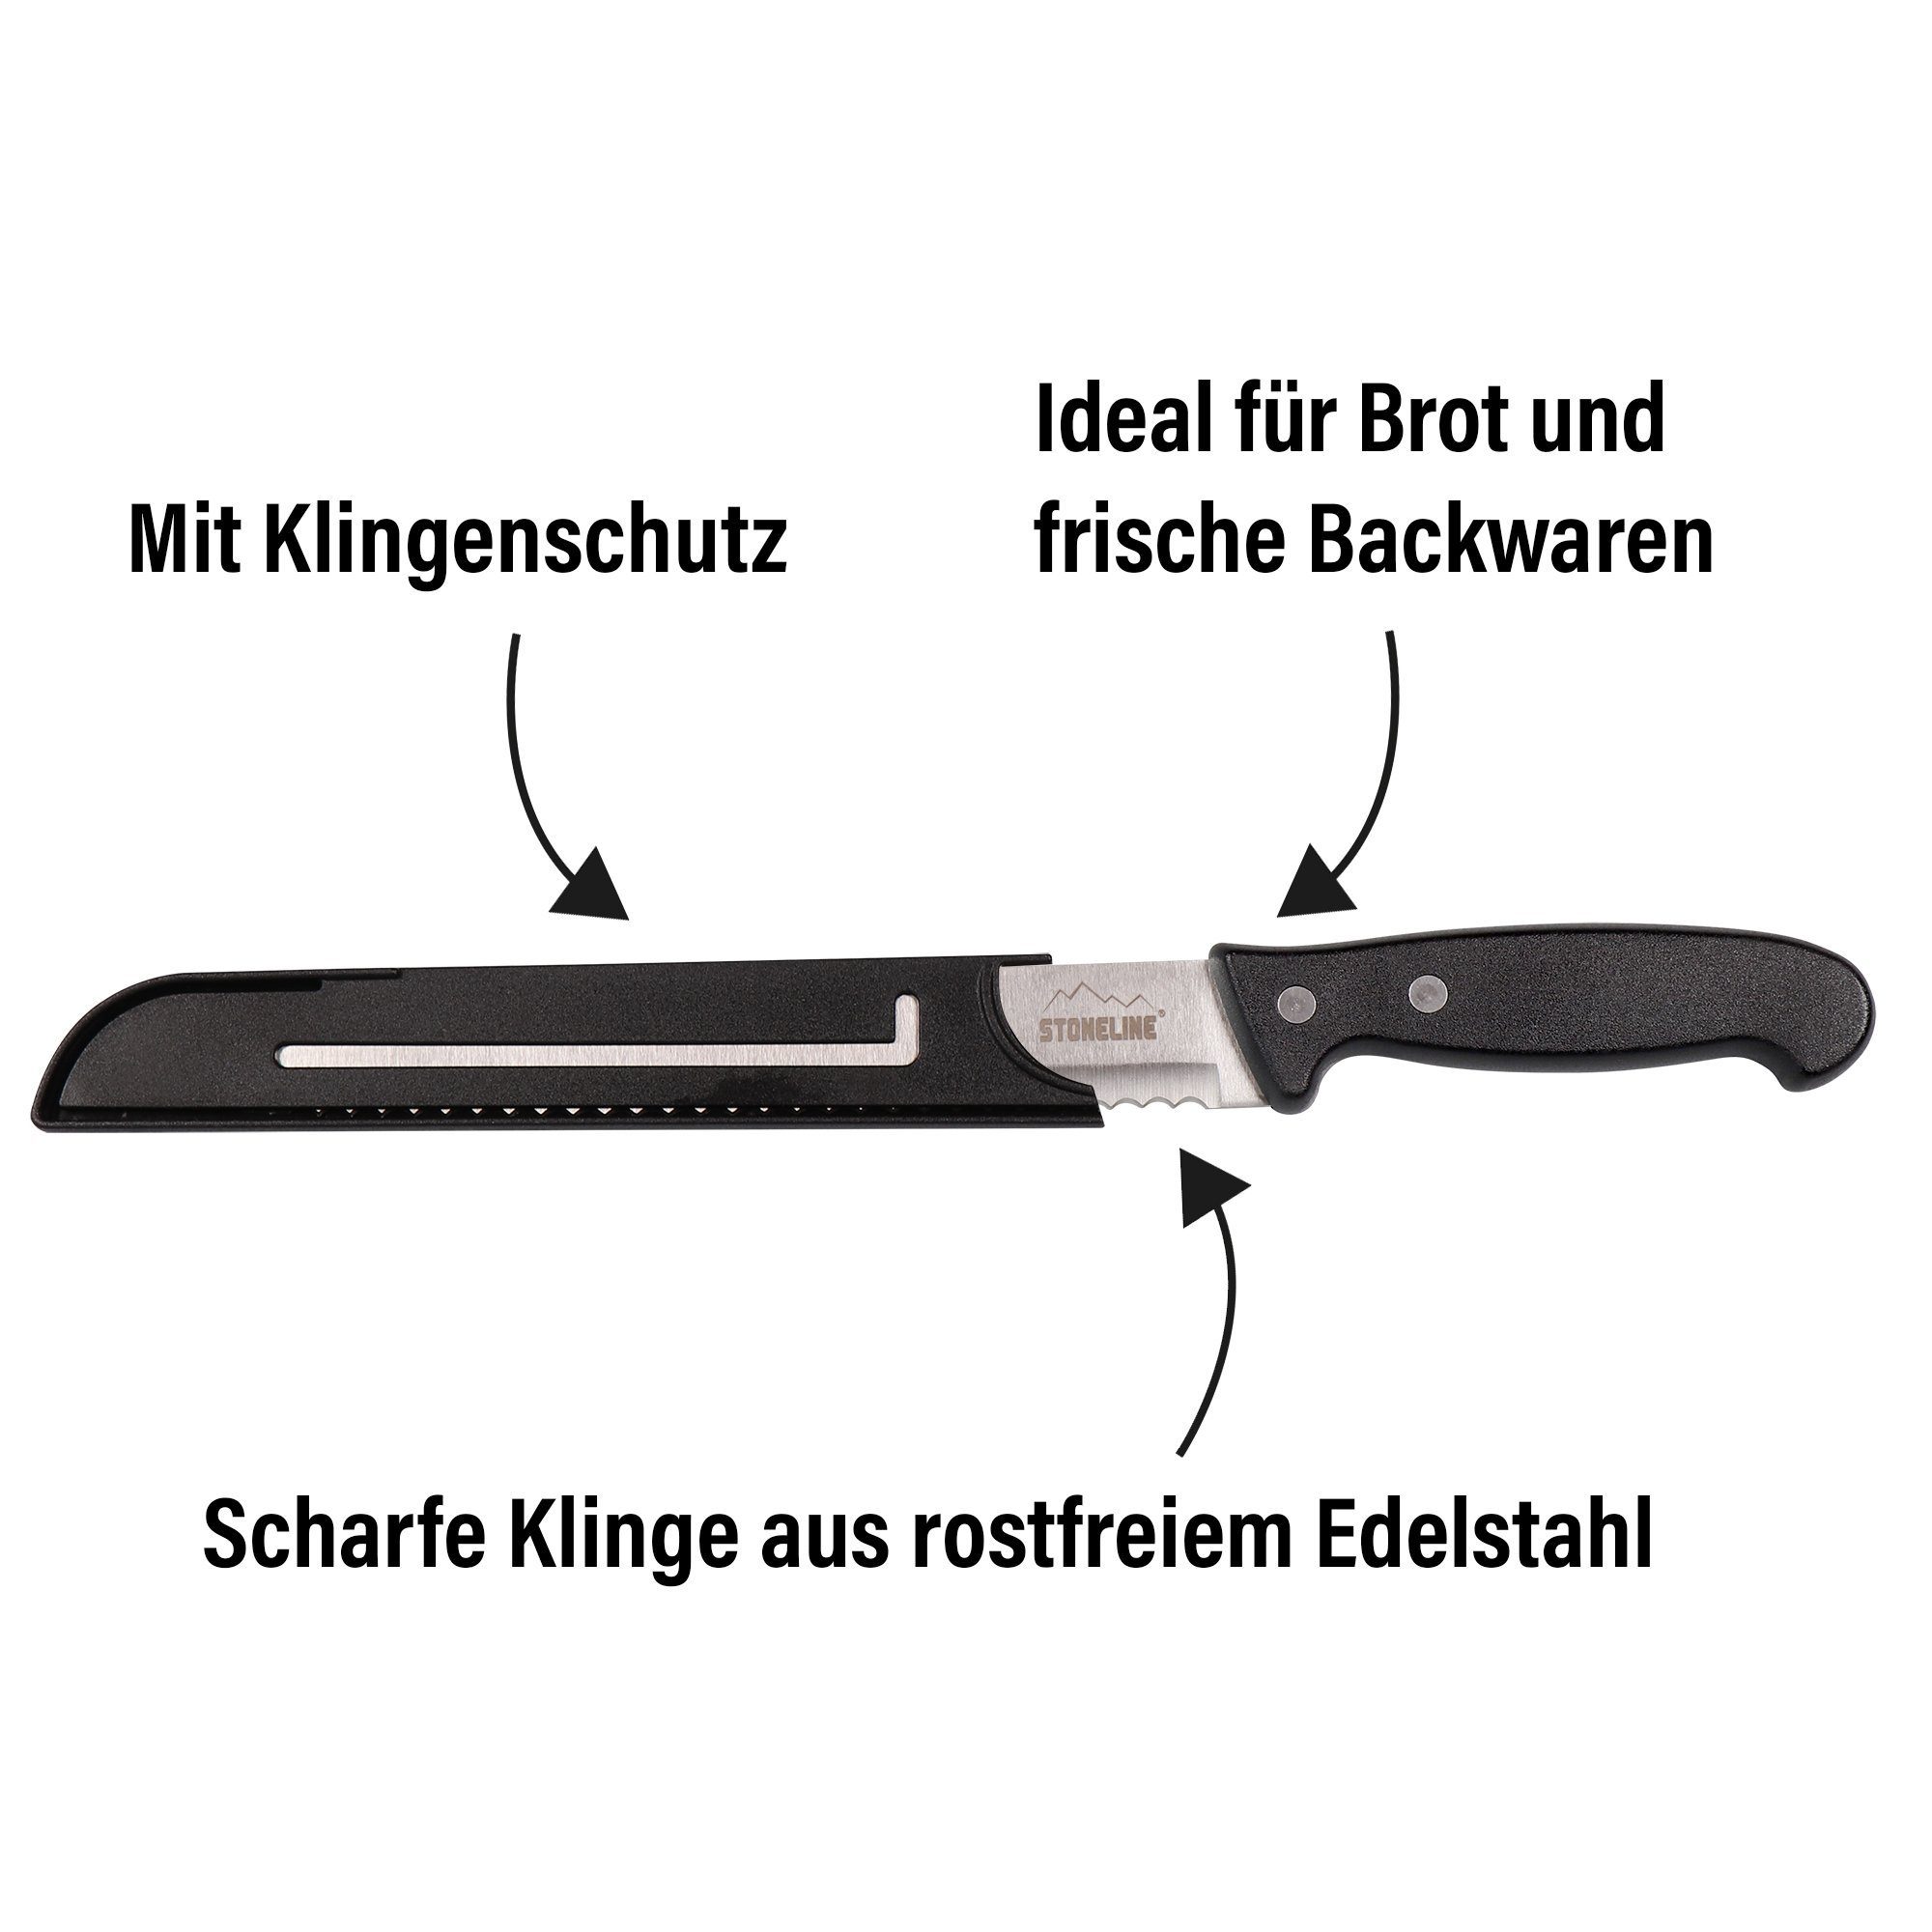 Brotmesser, STONELINE in Klingenschutz, mit Designed Germany Edelstahl rostfrei,